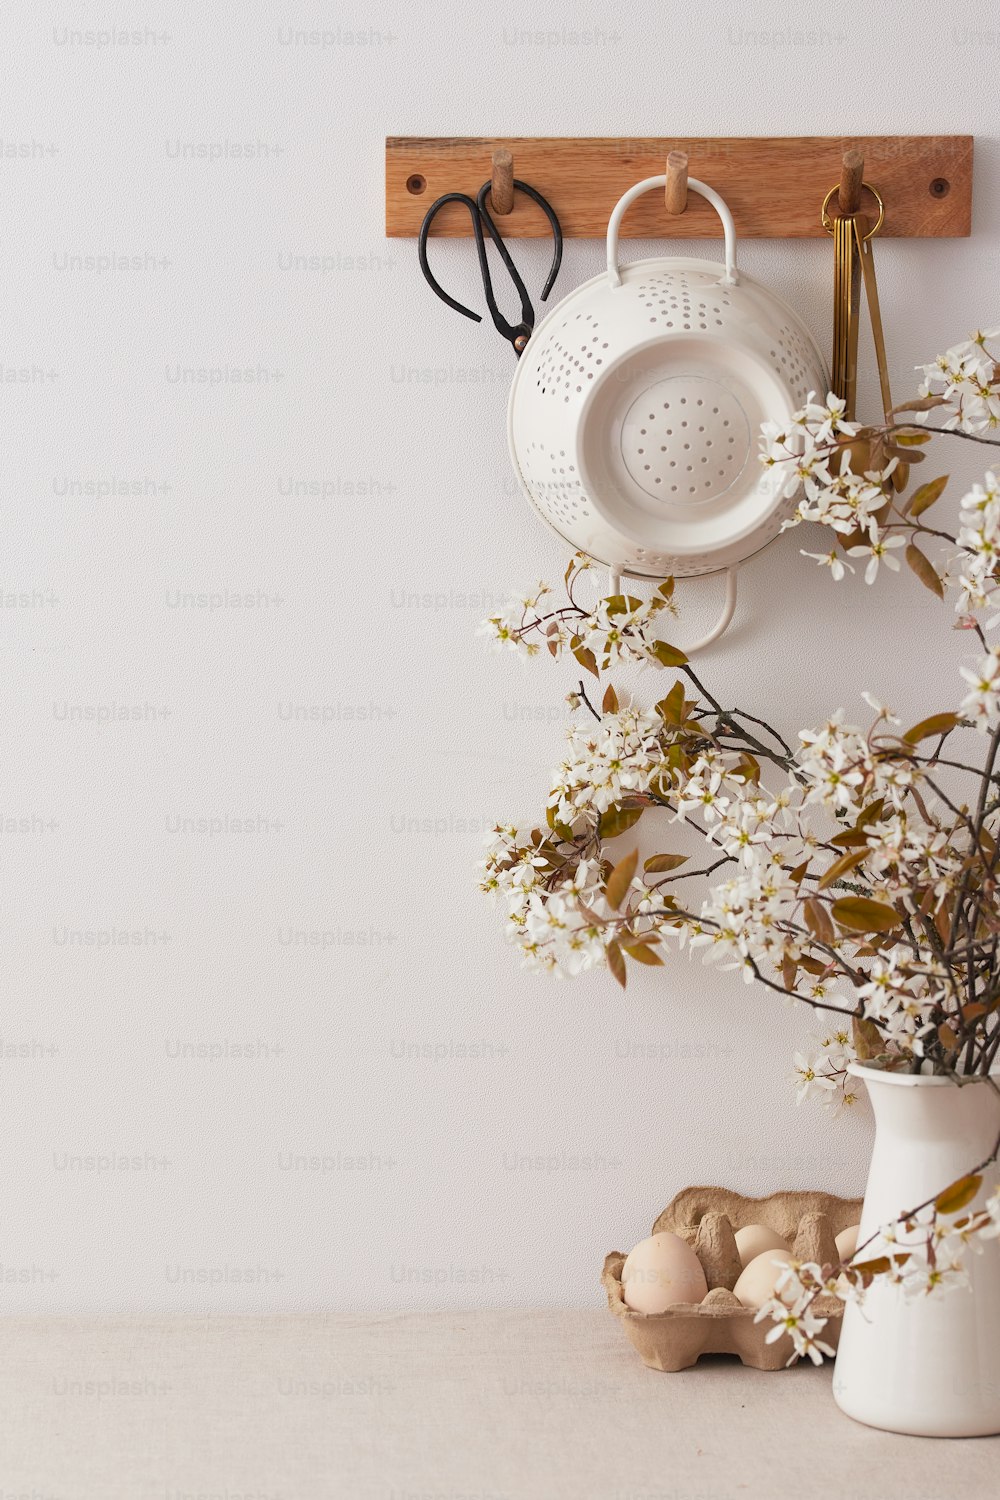 un jarrón blanco con flores y un par de tijeras